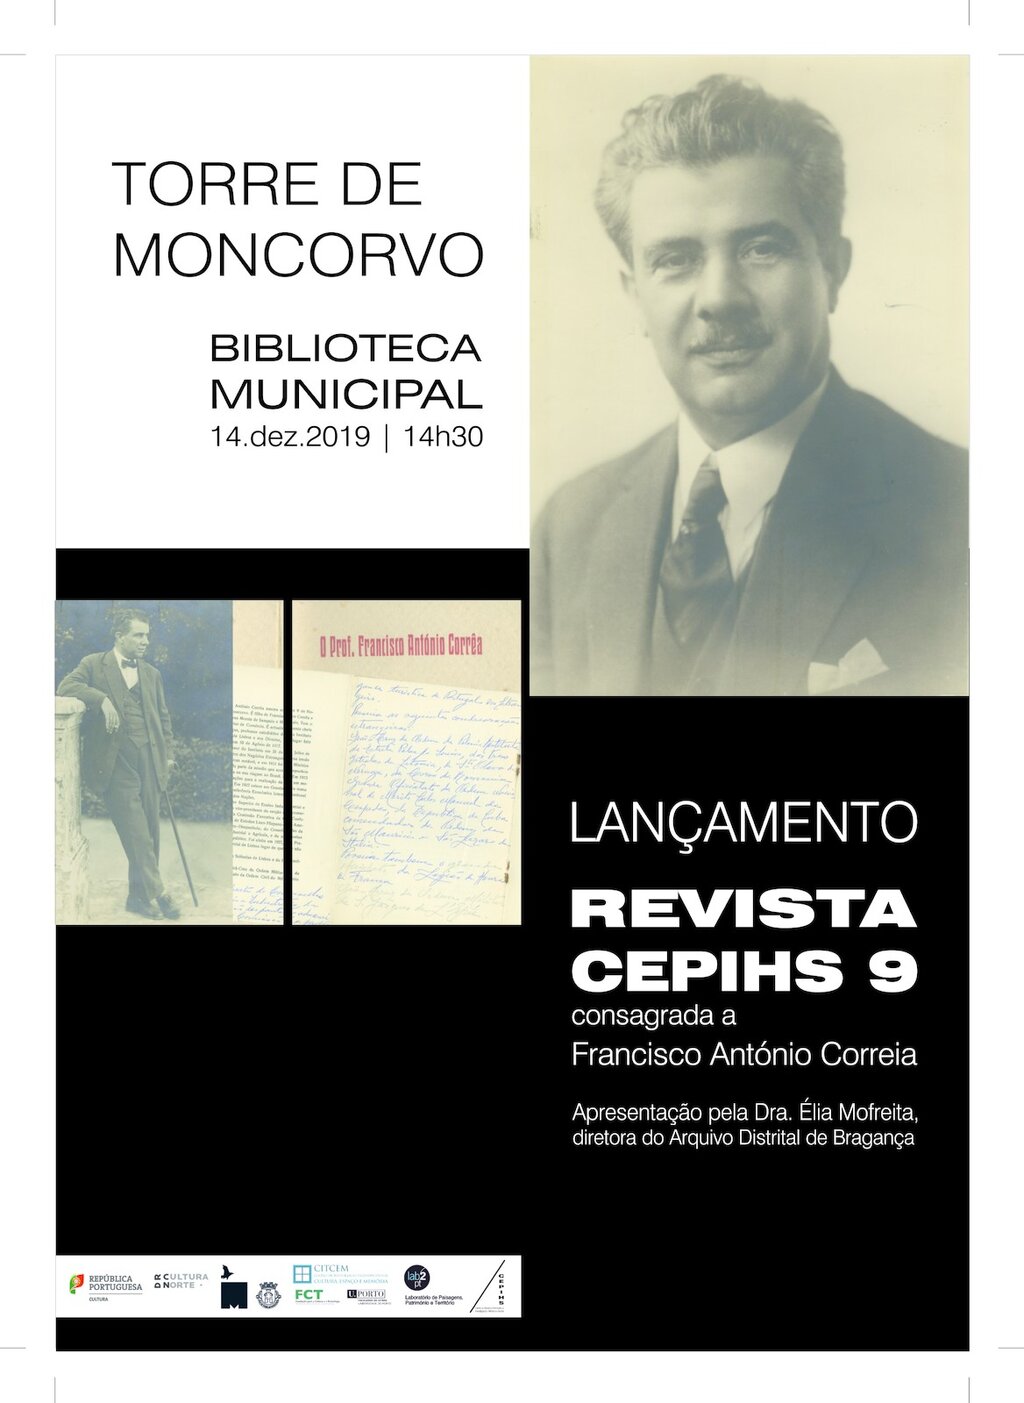 Biblioteca Municipal de Torre de Moncorvo recebe apresentação da Revista CEPIHS 9